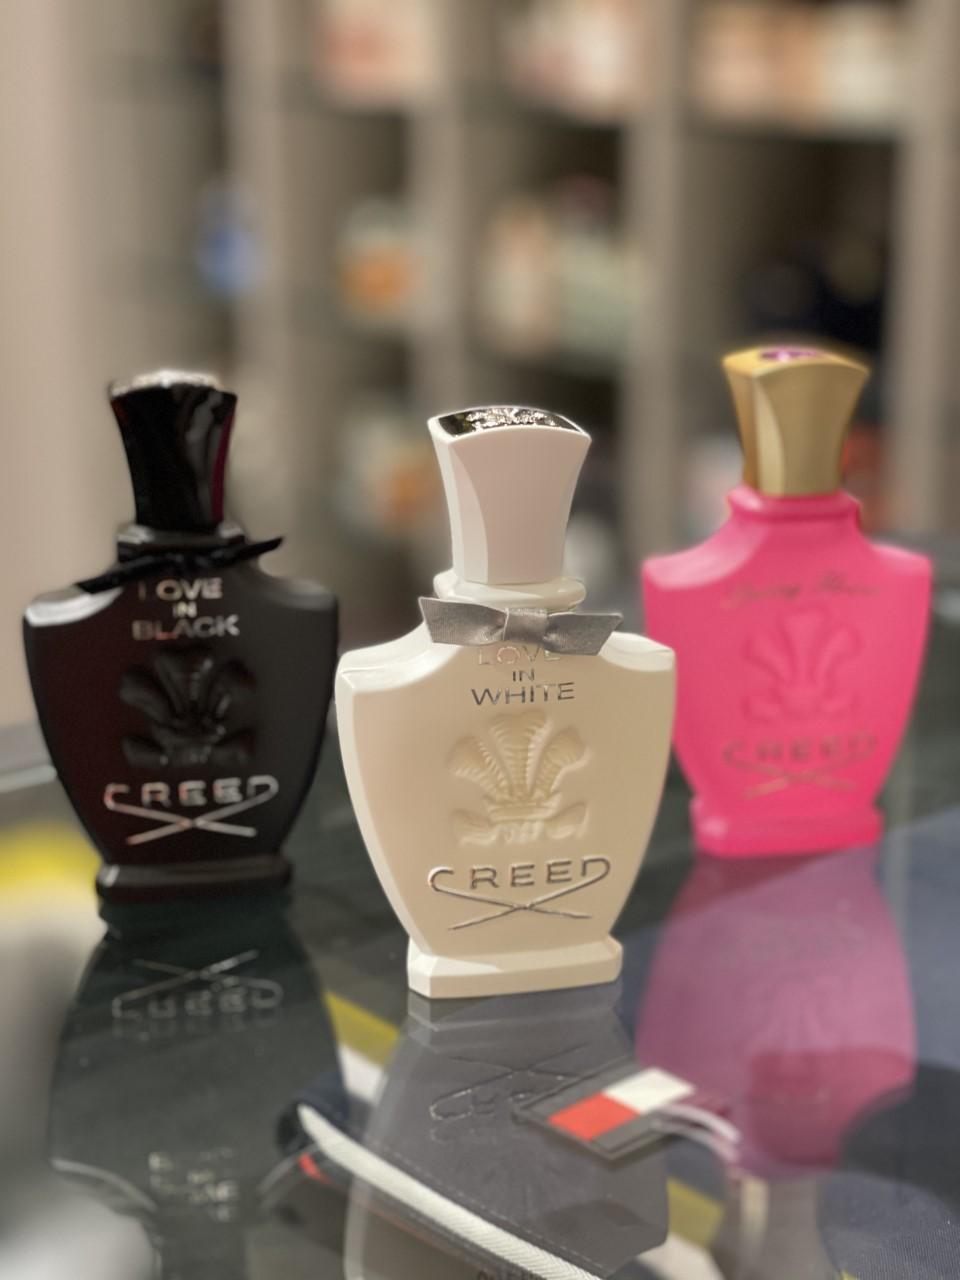 Os perfumes ingleses da Creed tem fragrância inimitável e são usados por muitas personalidades do mundo.